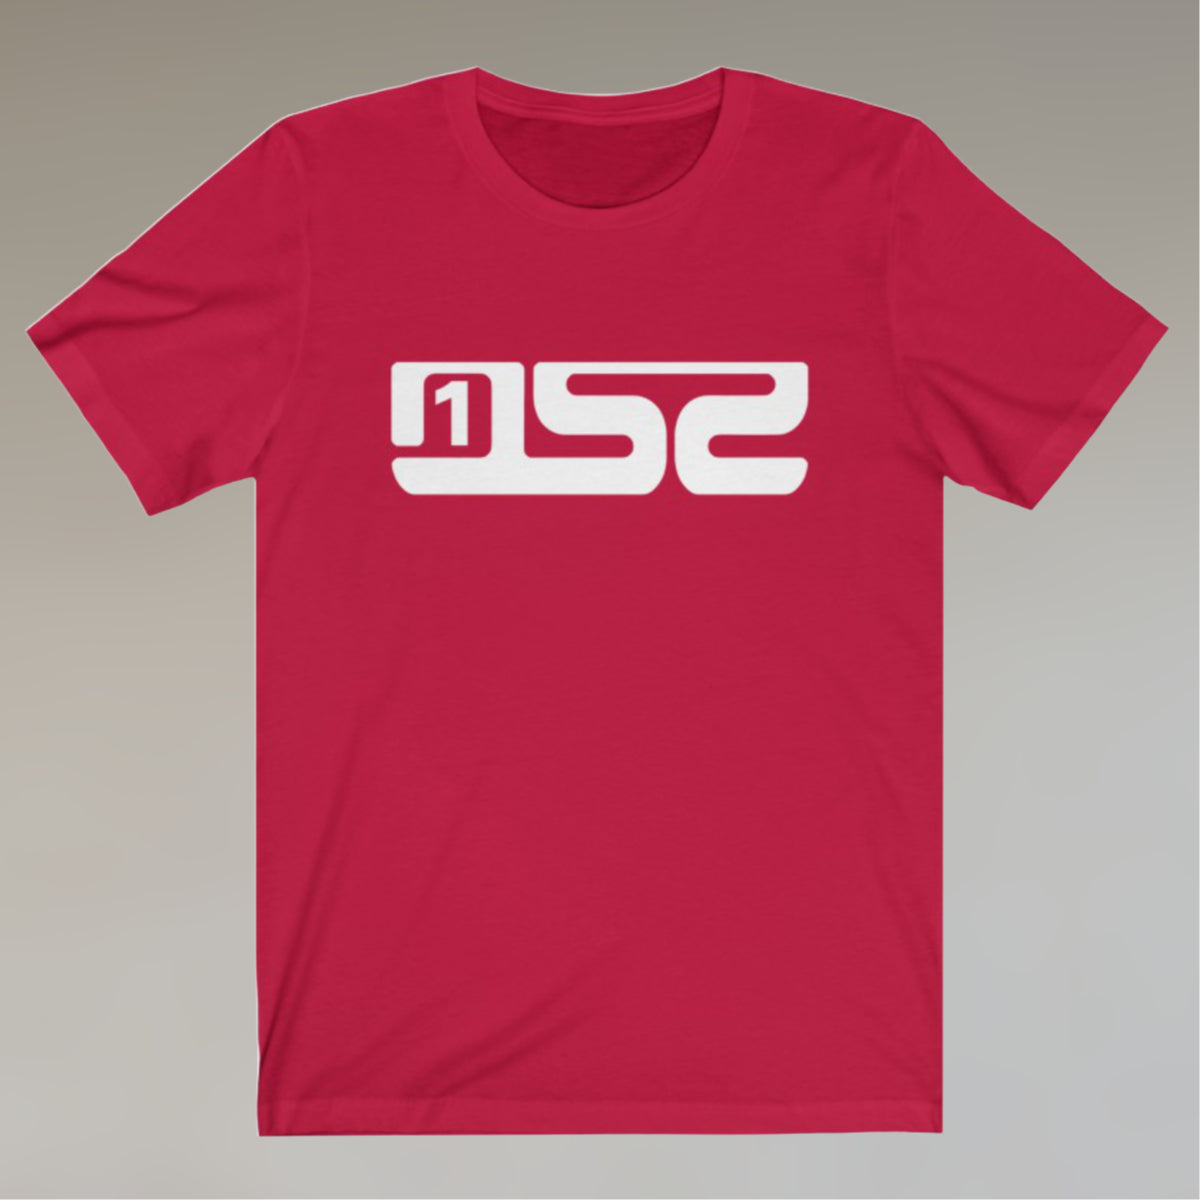 1SZ - Unisex T-Shirt